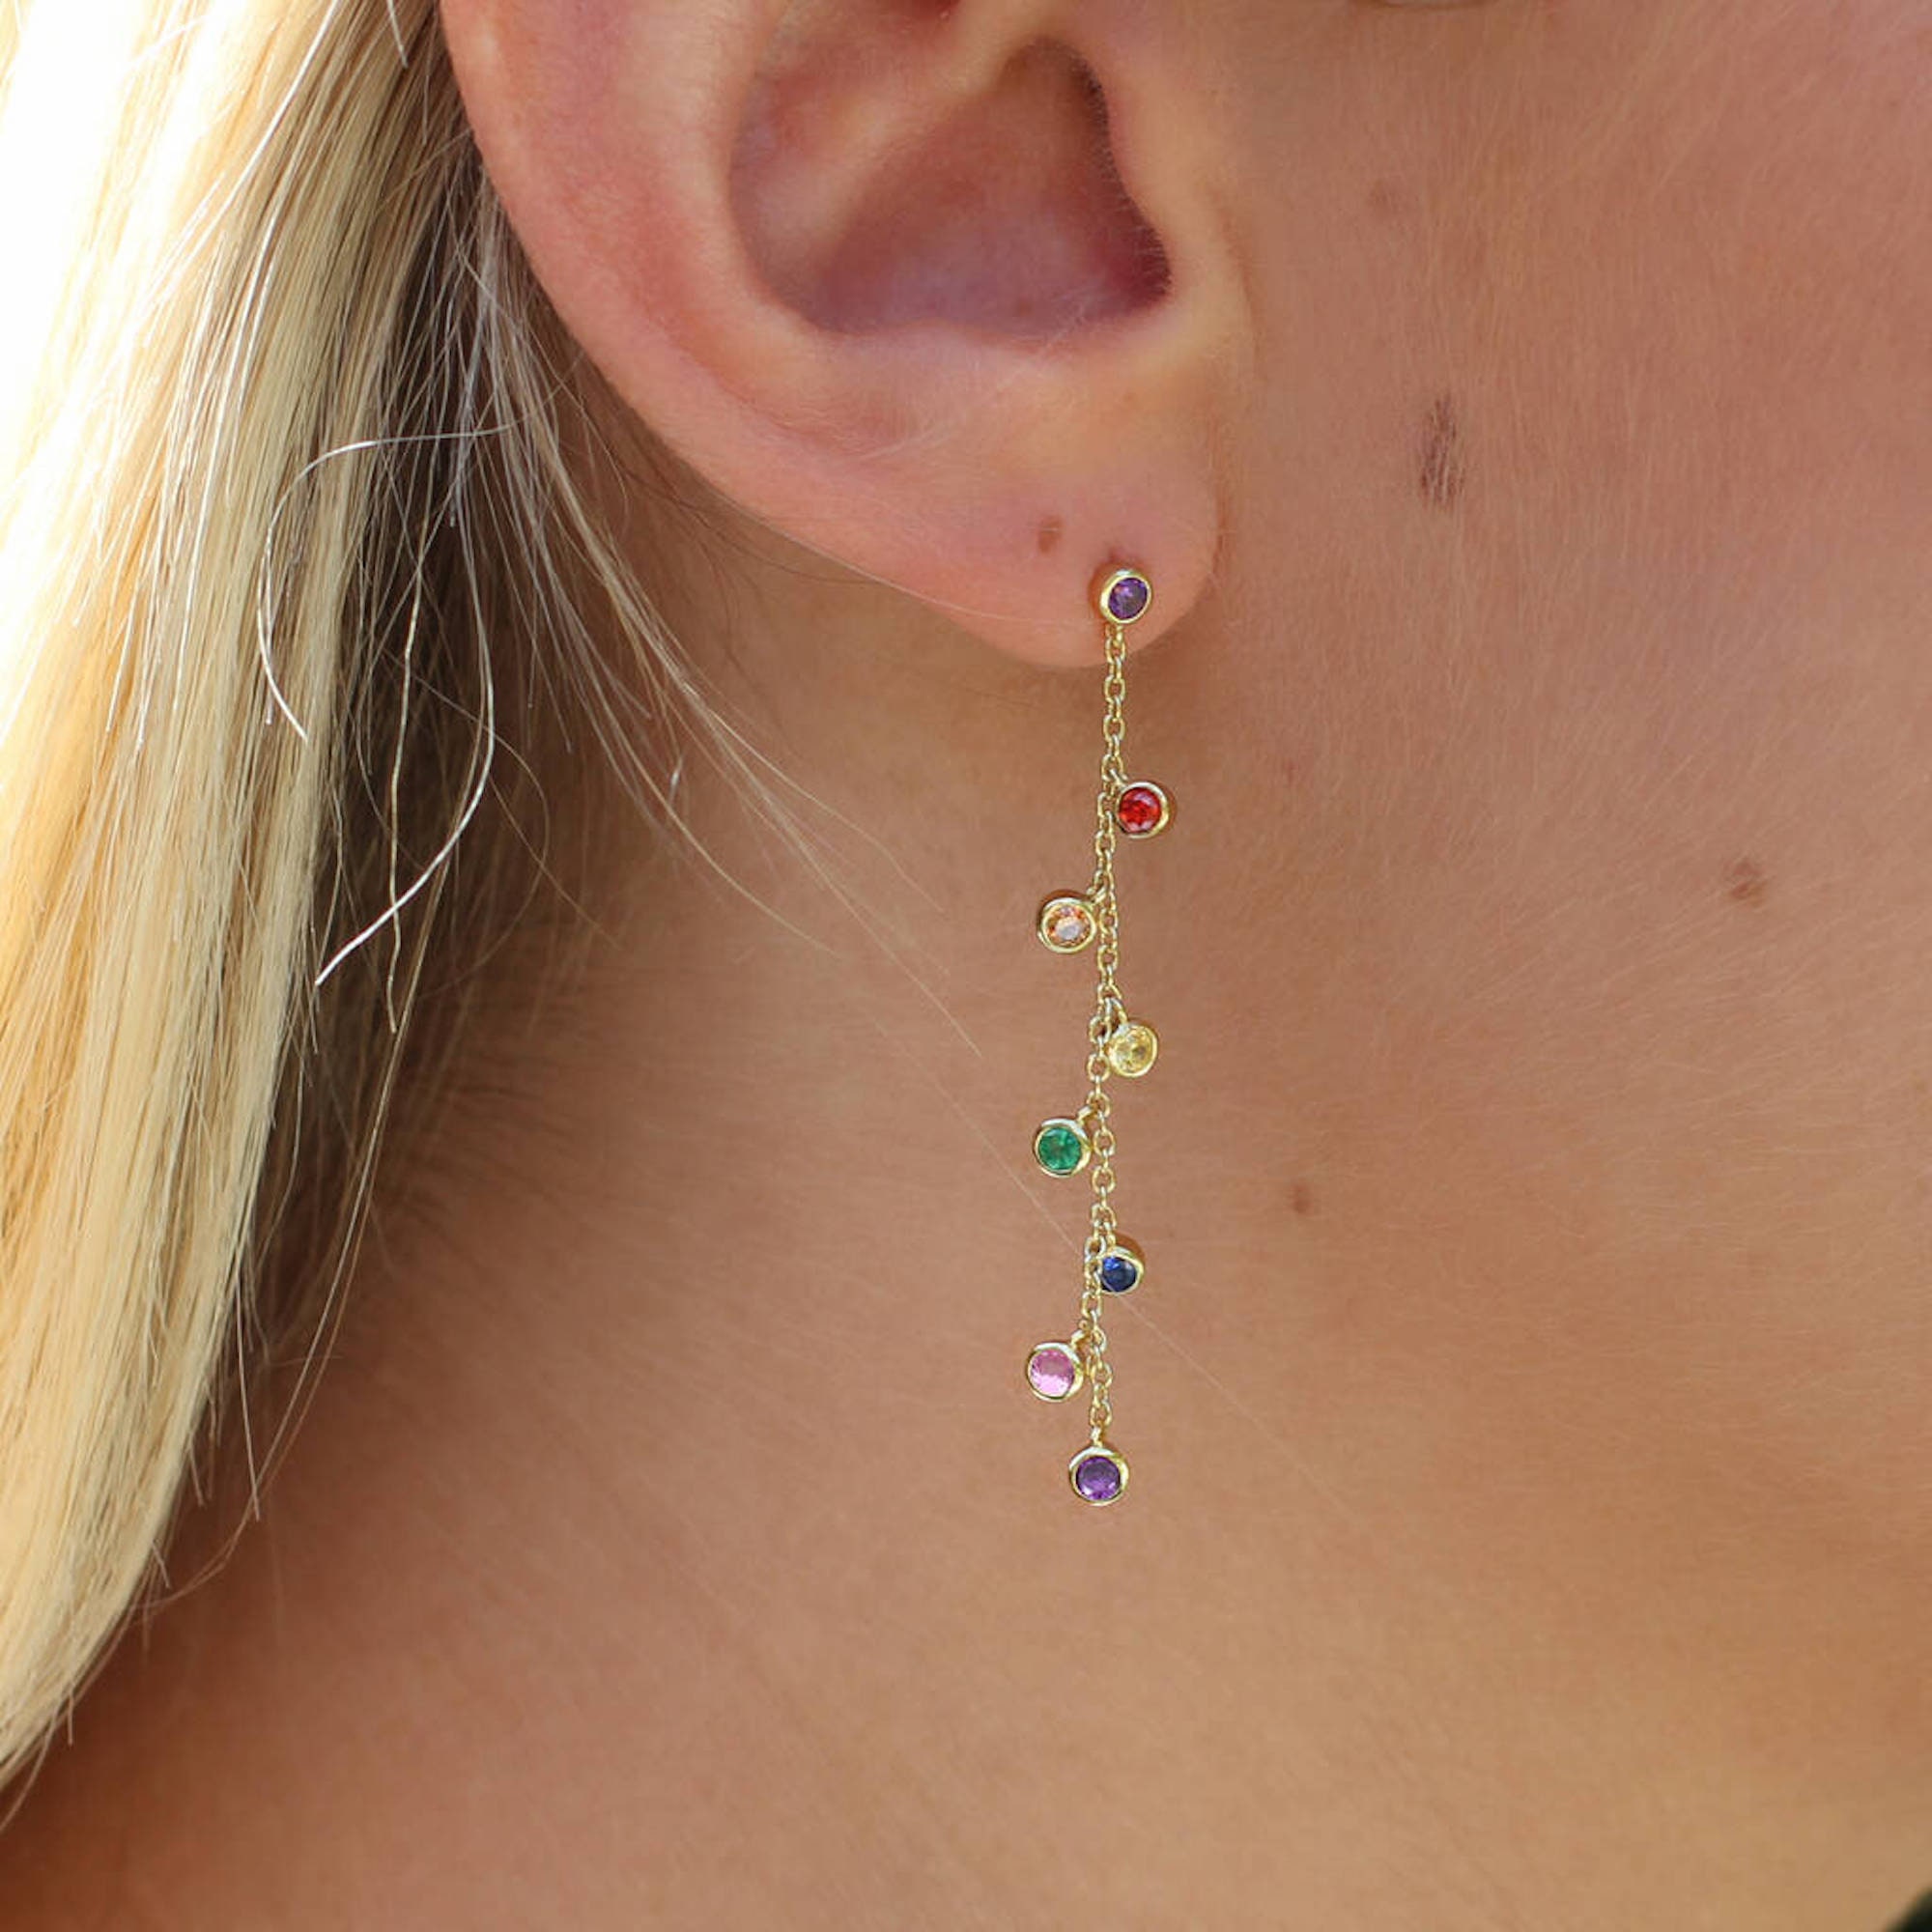 Buy Gold Rainbow Gemstone Crystal Earrings Online in India  Etsy